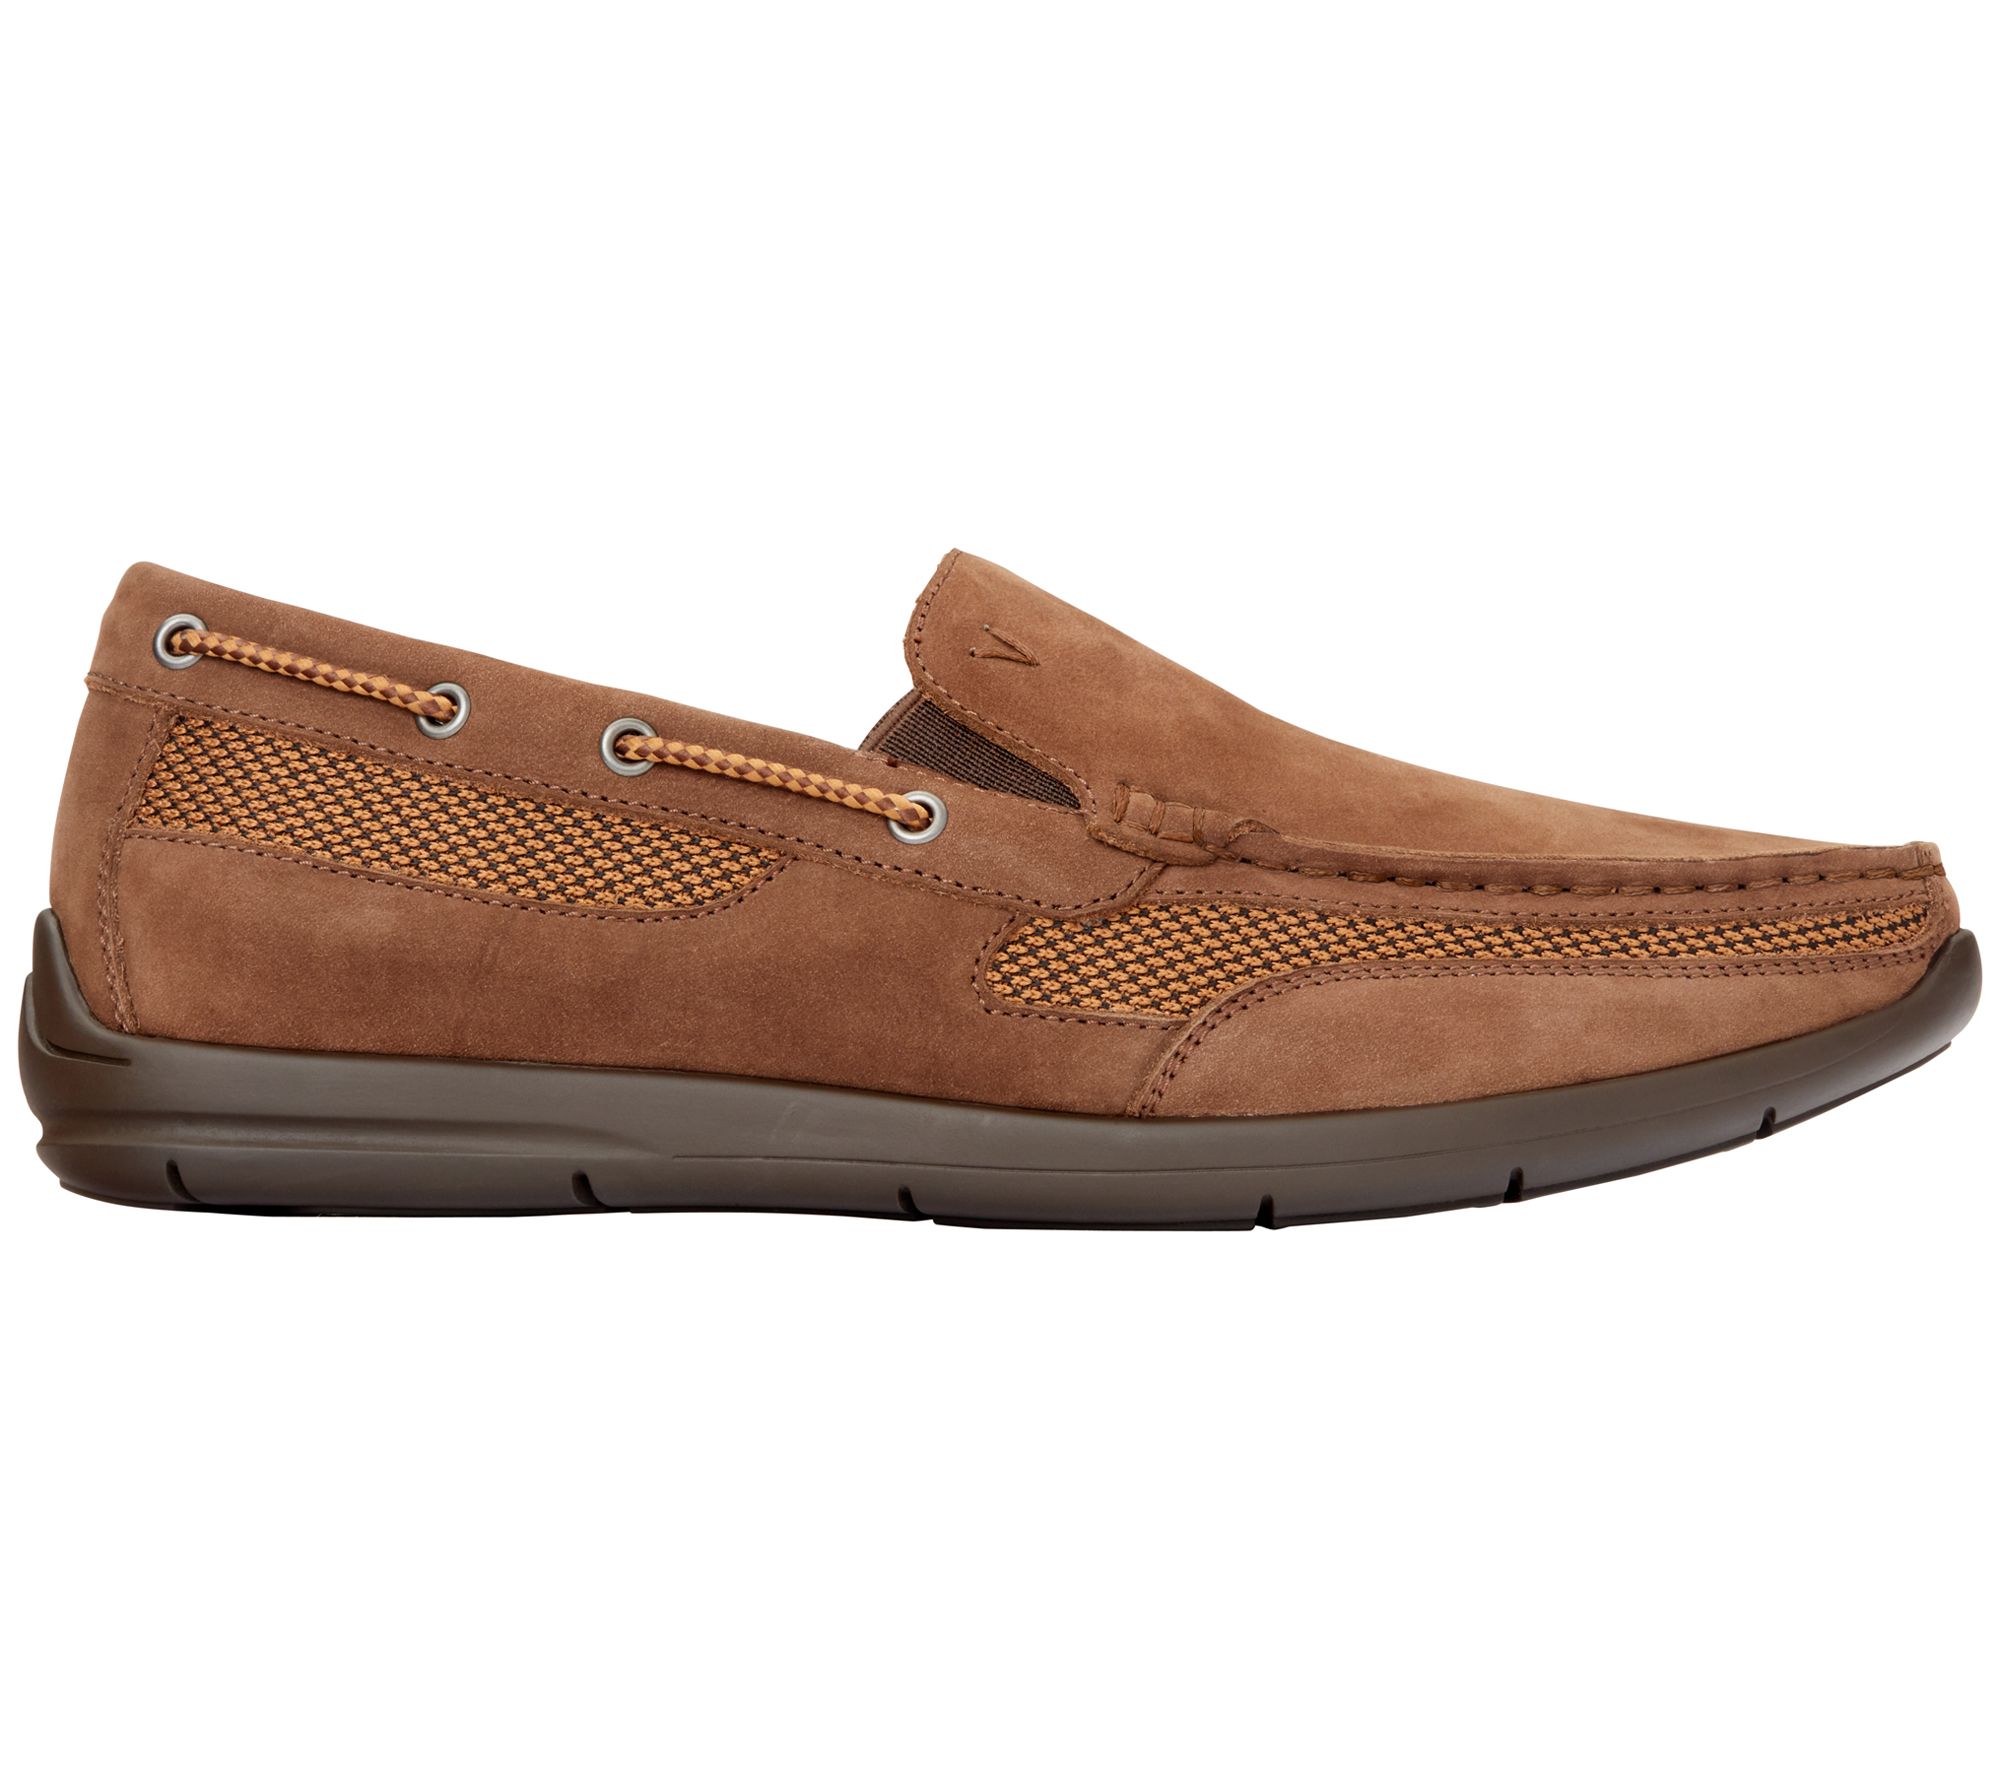 Vionic Men's Leather Boat Shoes - Earl - QVC.com